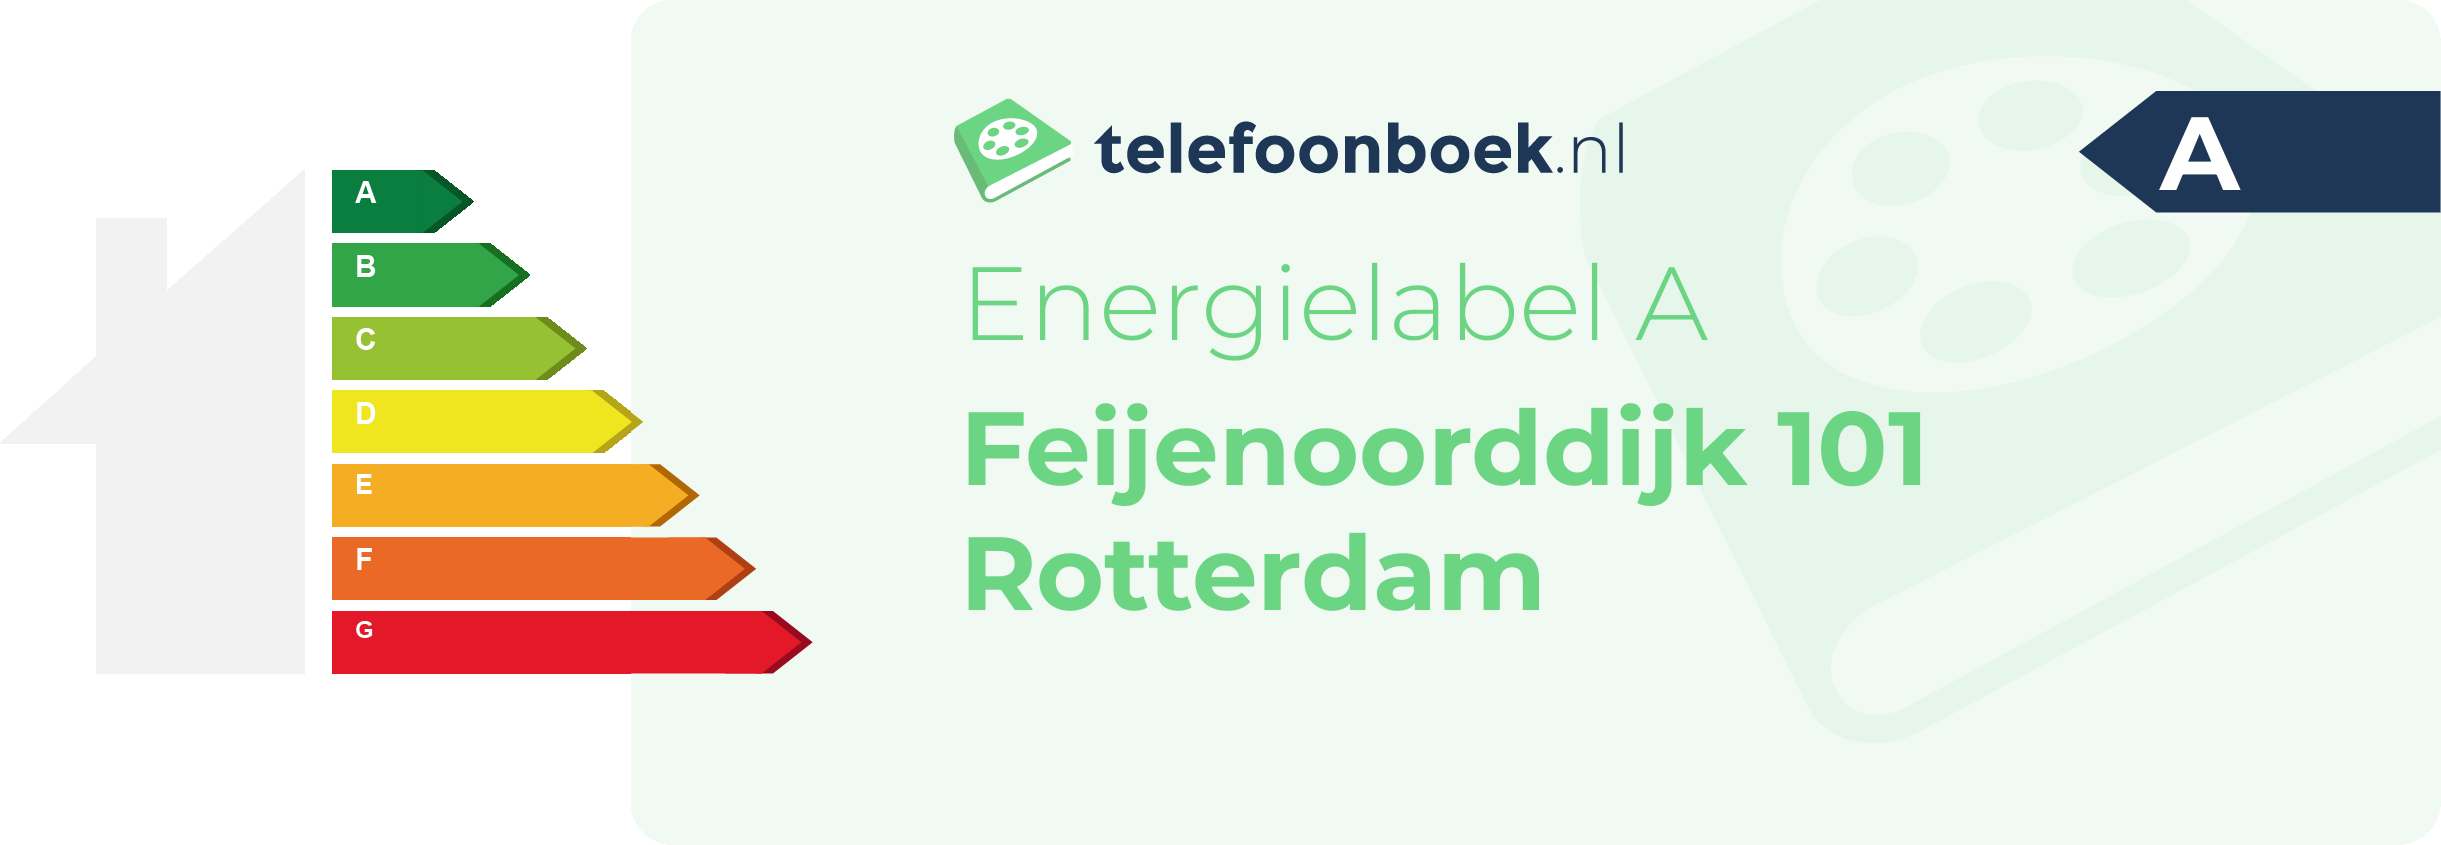 Energielabel Feijenoorddijk 101 Rotterdam